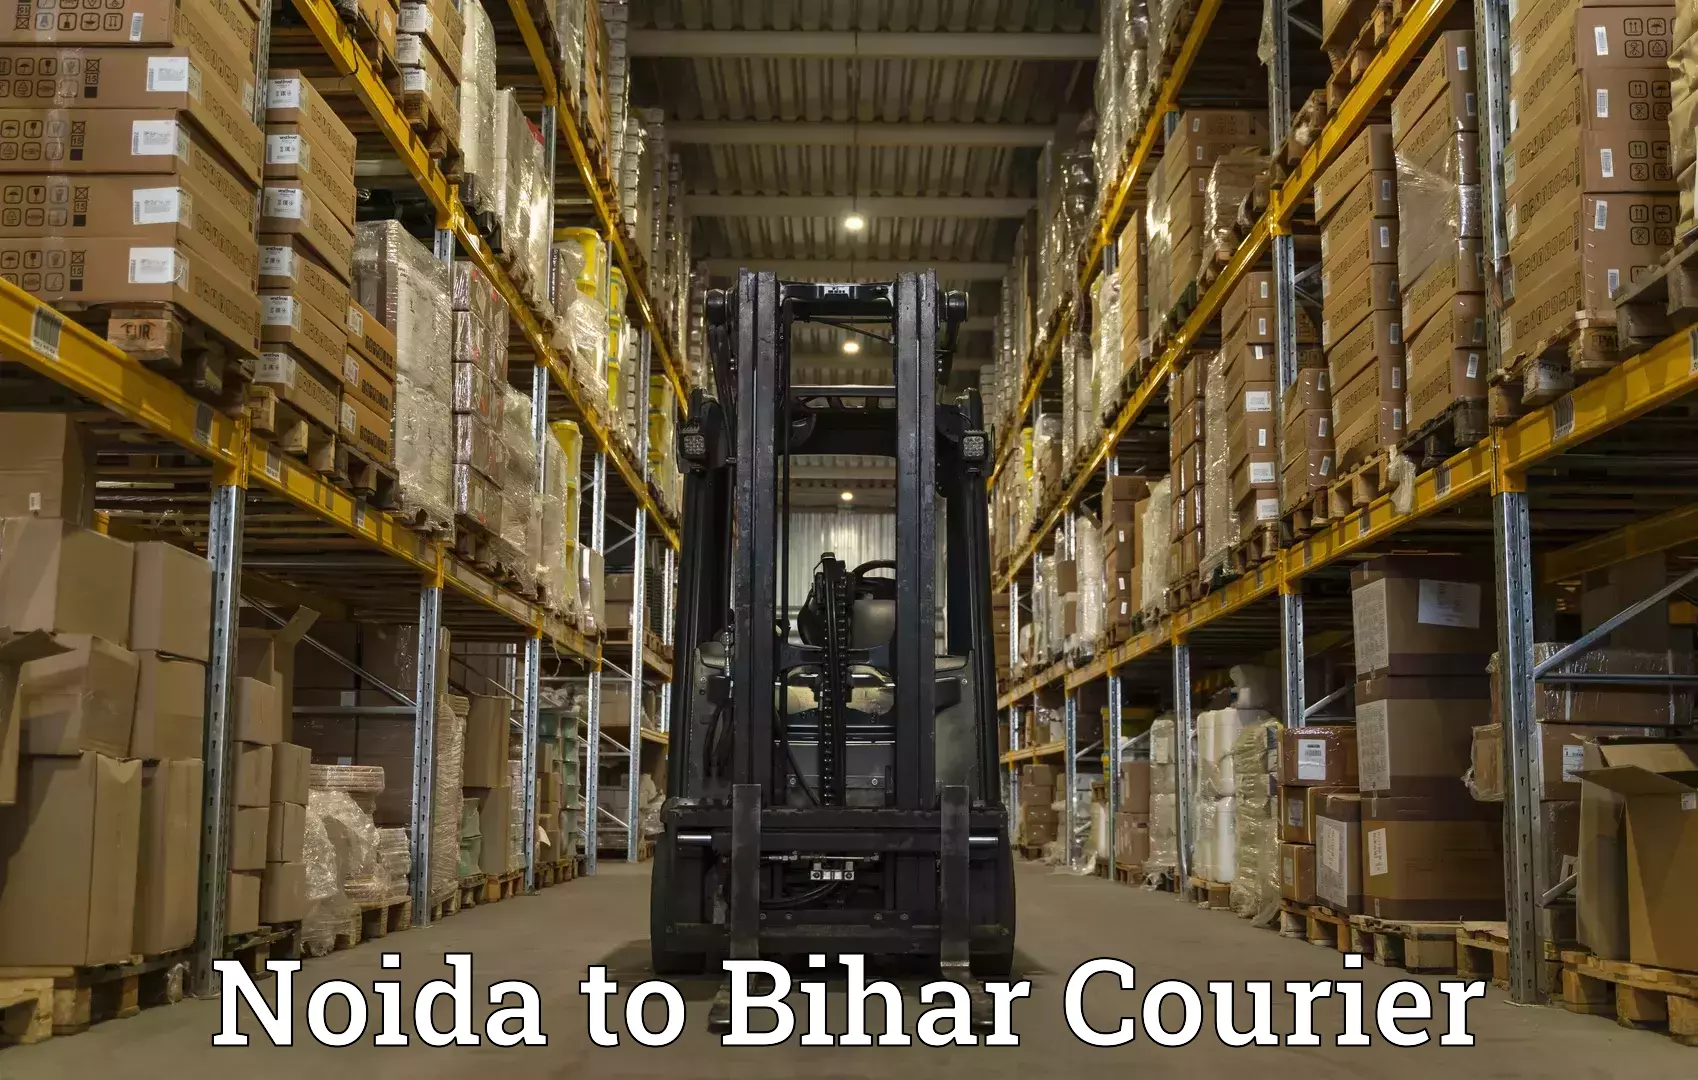 Advanced shipping services Noida to Giddha